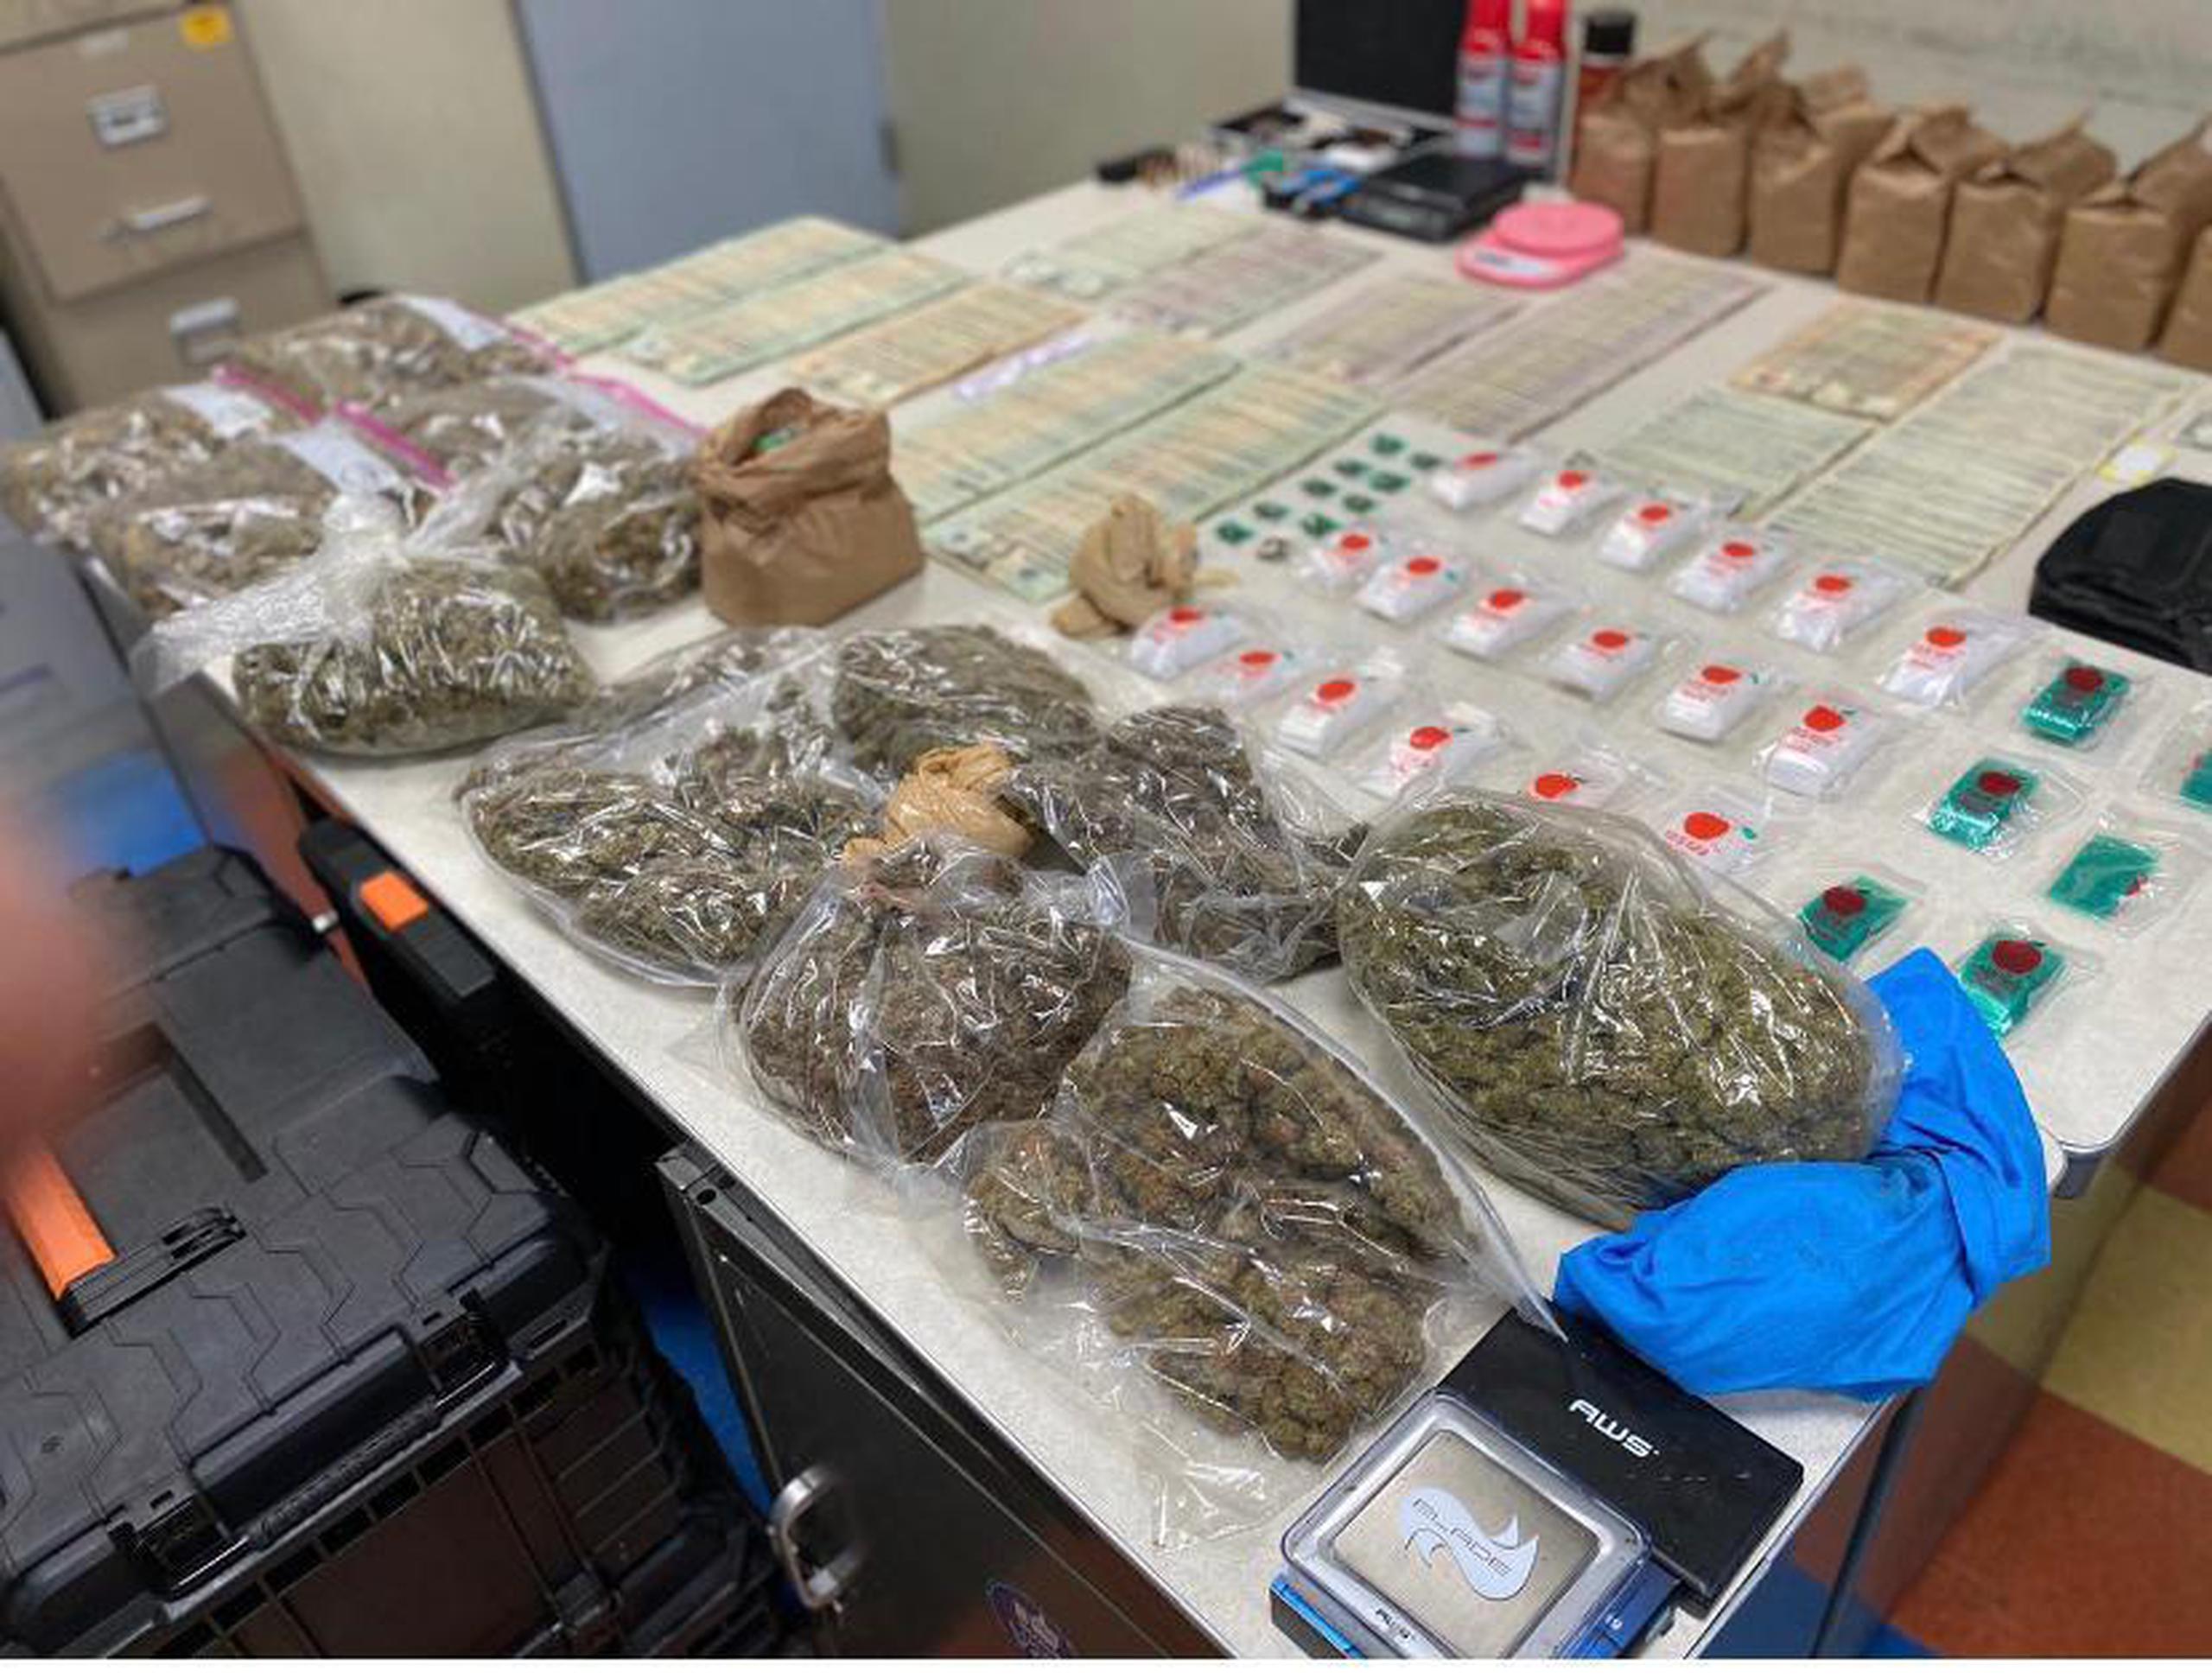 Resultado de un allanamiento en una residencia del barrio Jacaguas en Juana Díaz donde ocuparon más de seis libras de marihuana de la variedad “cripy”, un cargador y más de $7,400.